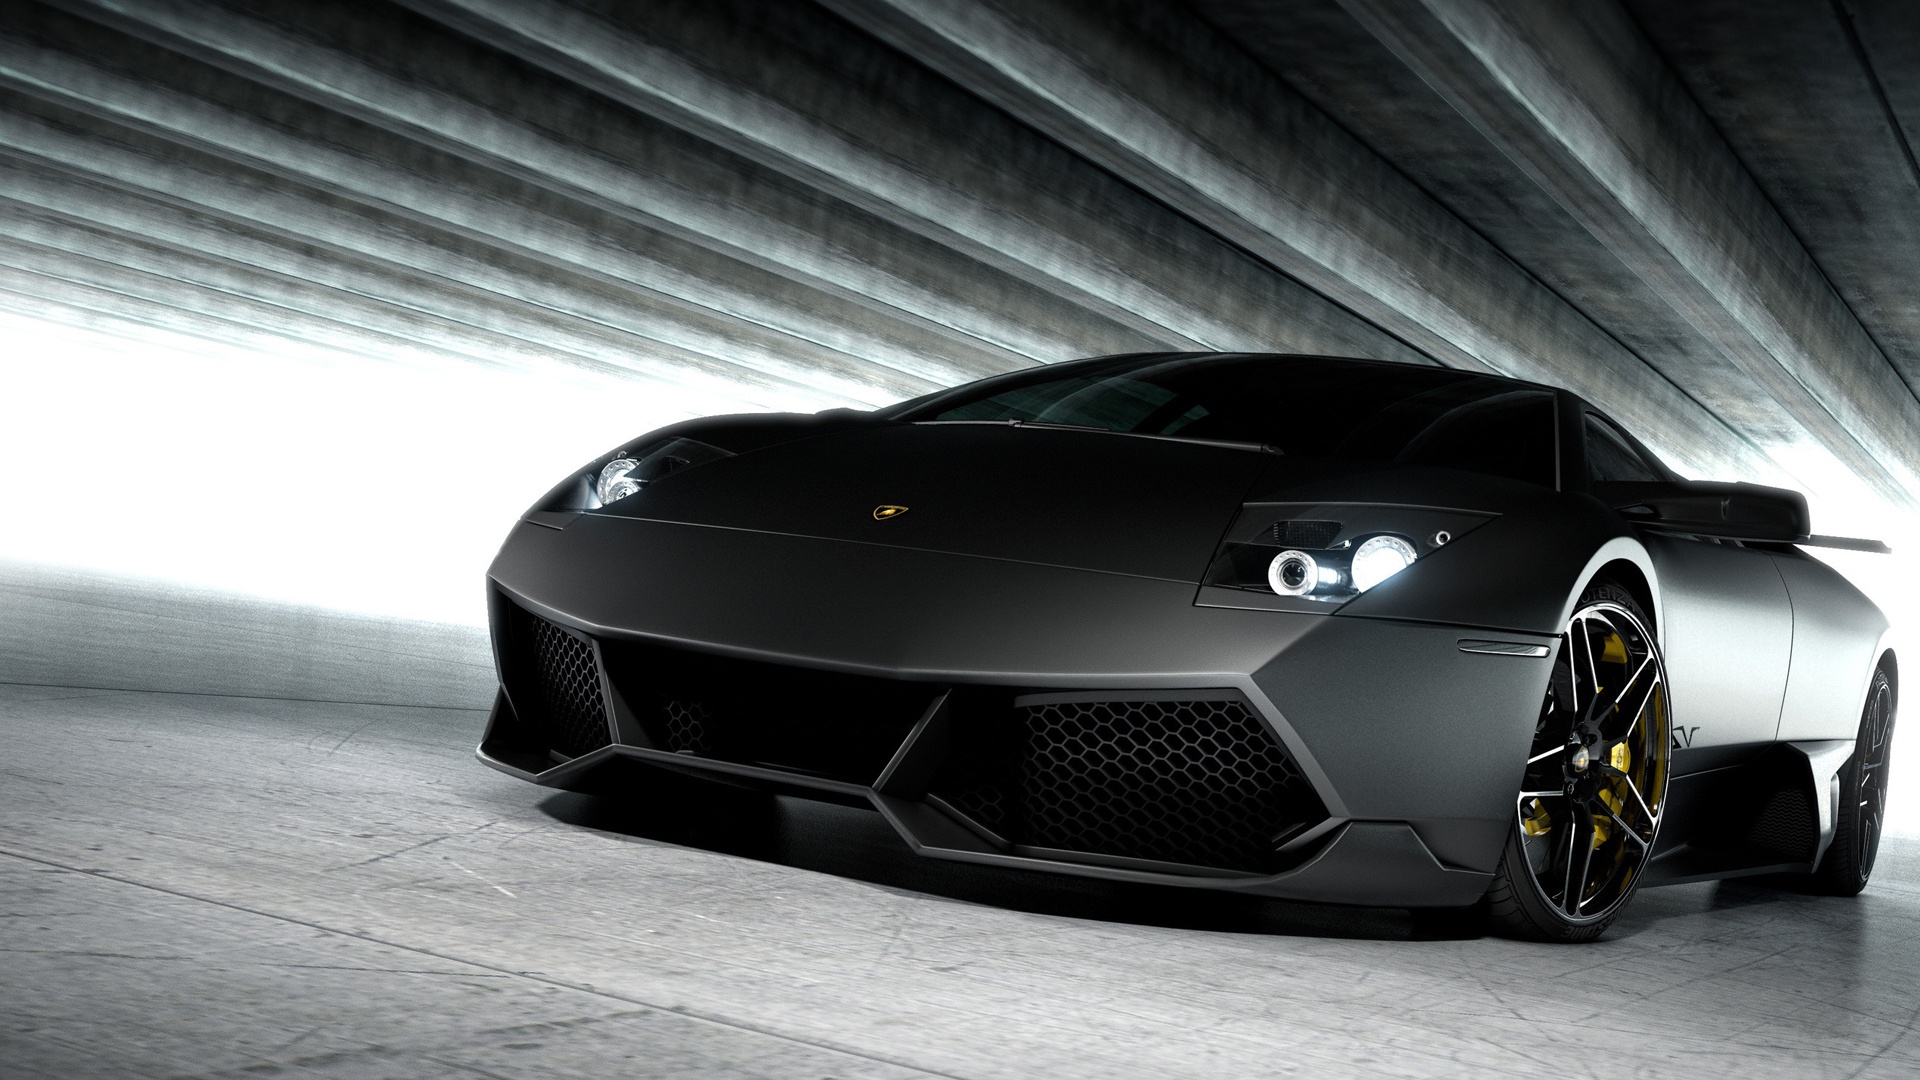 Lamborghini Wallpaper In HD For Desktop And